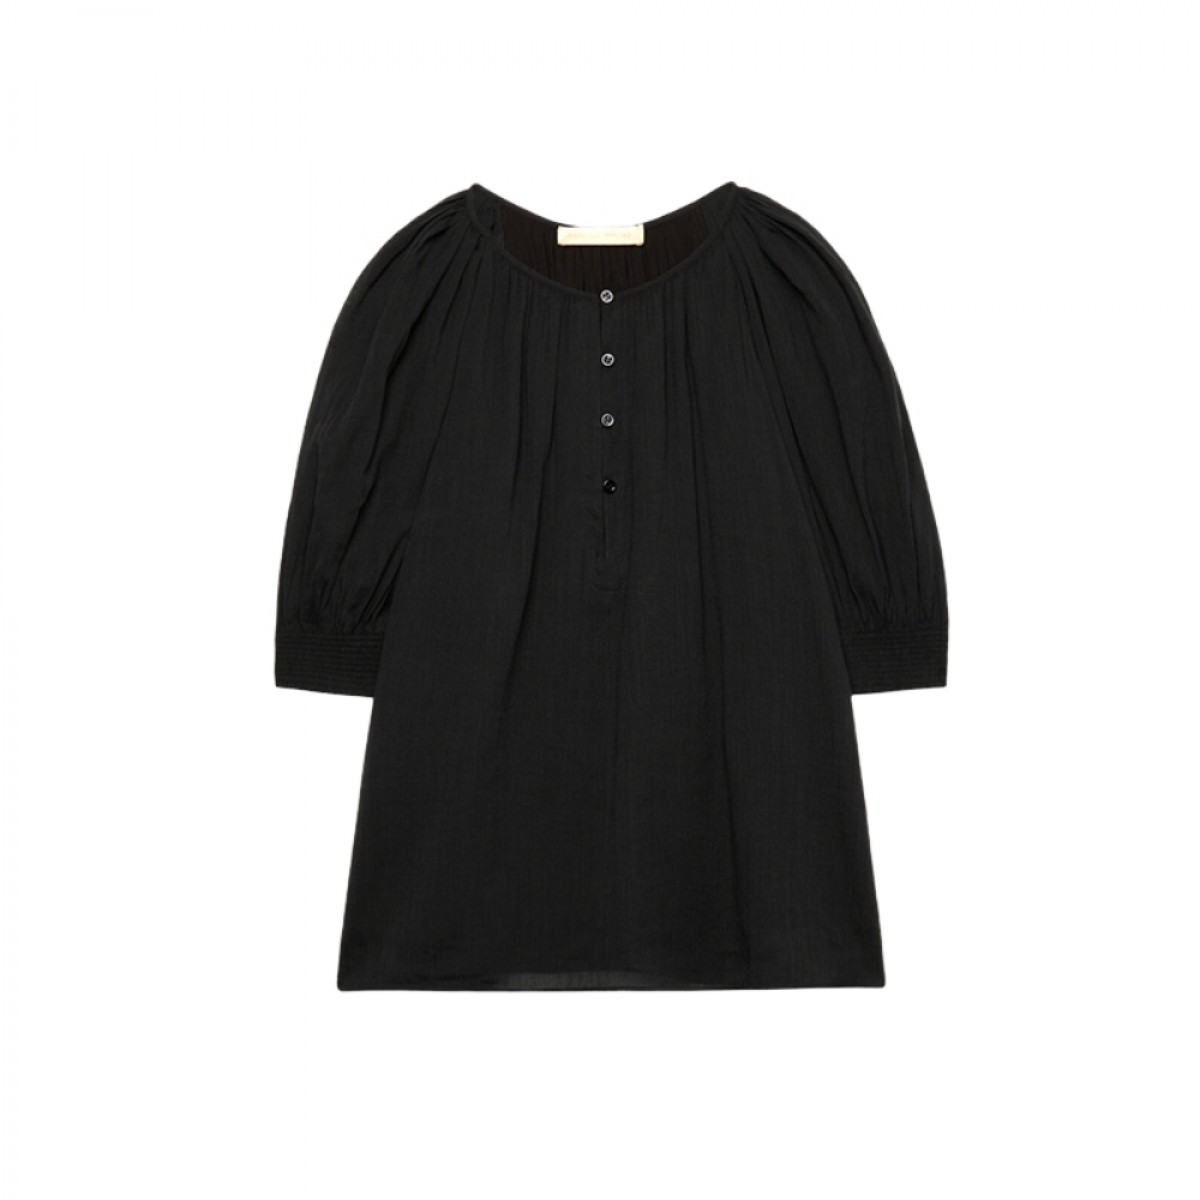 seban blouse - black - front